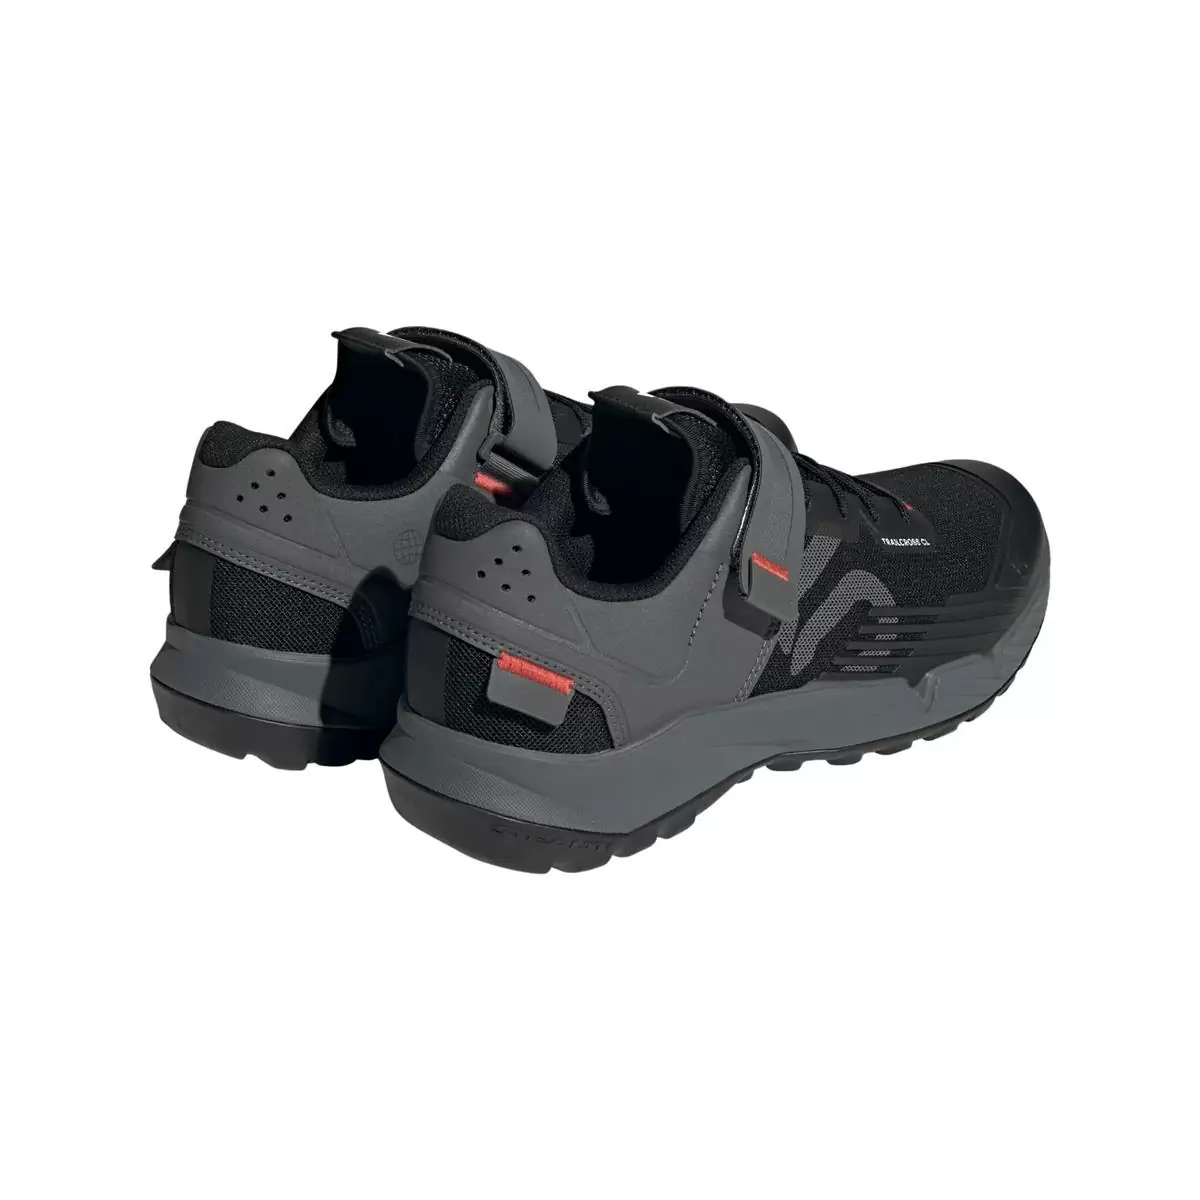 Clip 5.10 Trailcross MTB Shoes Black/Grey Size 42.5 #5